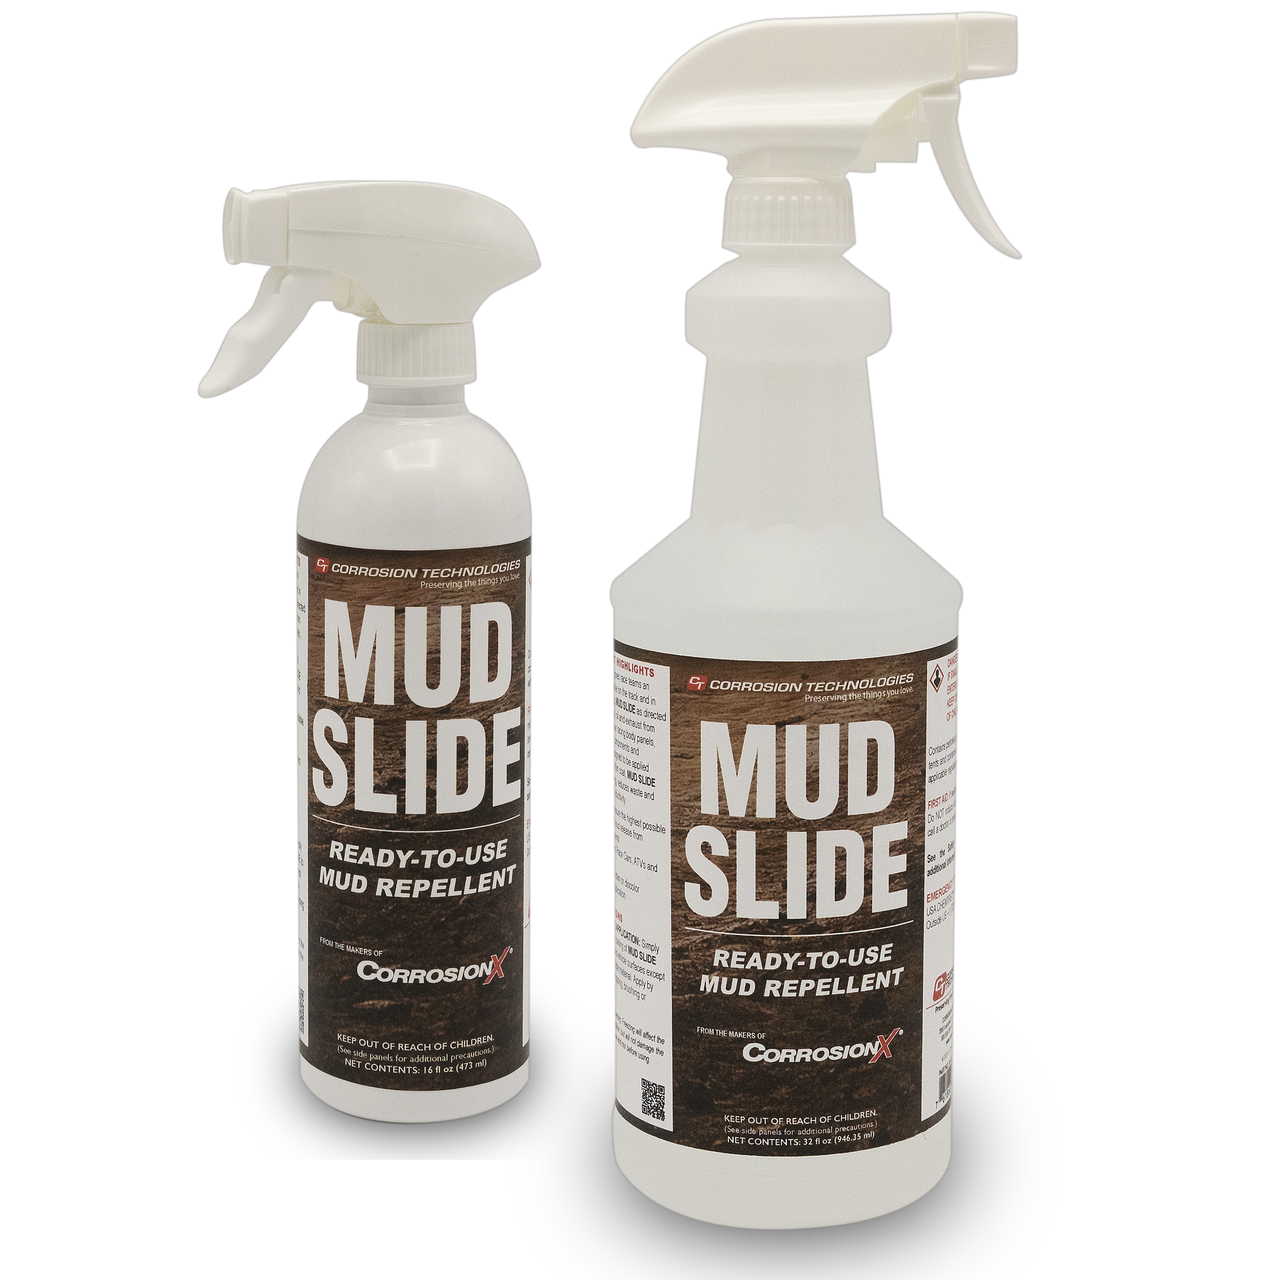 Mud Slide repelente de barro listo para usar 